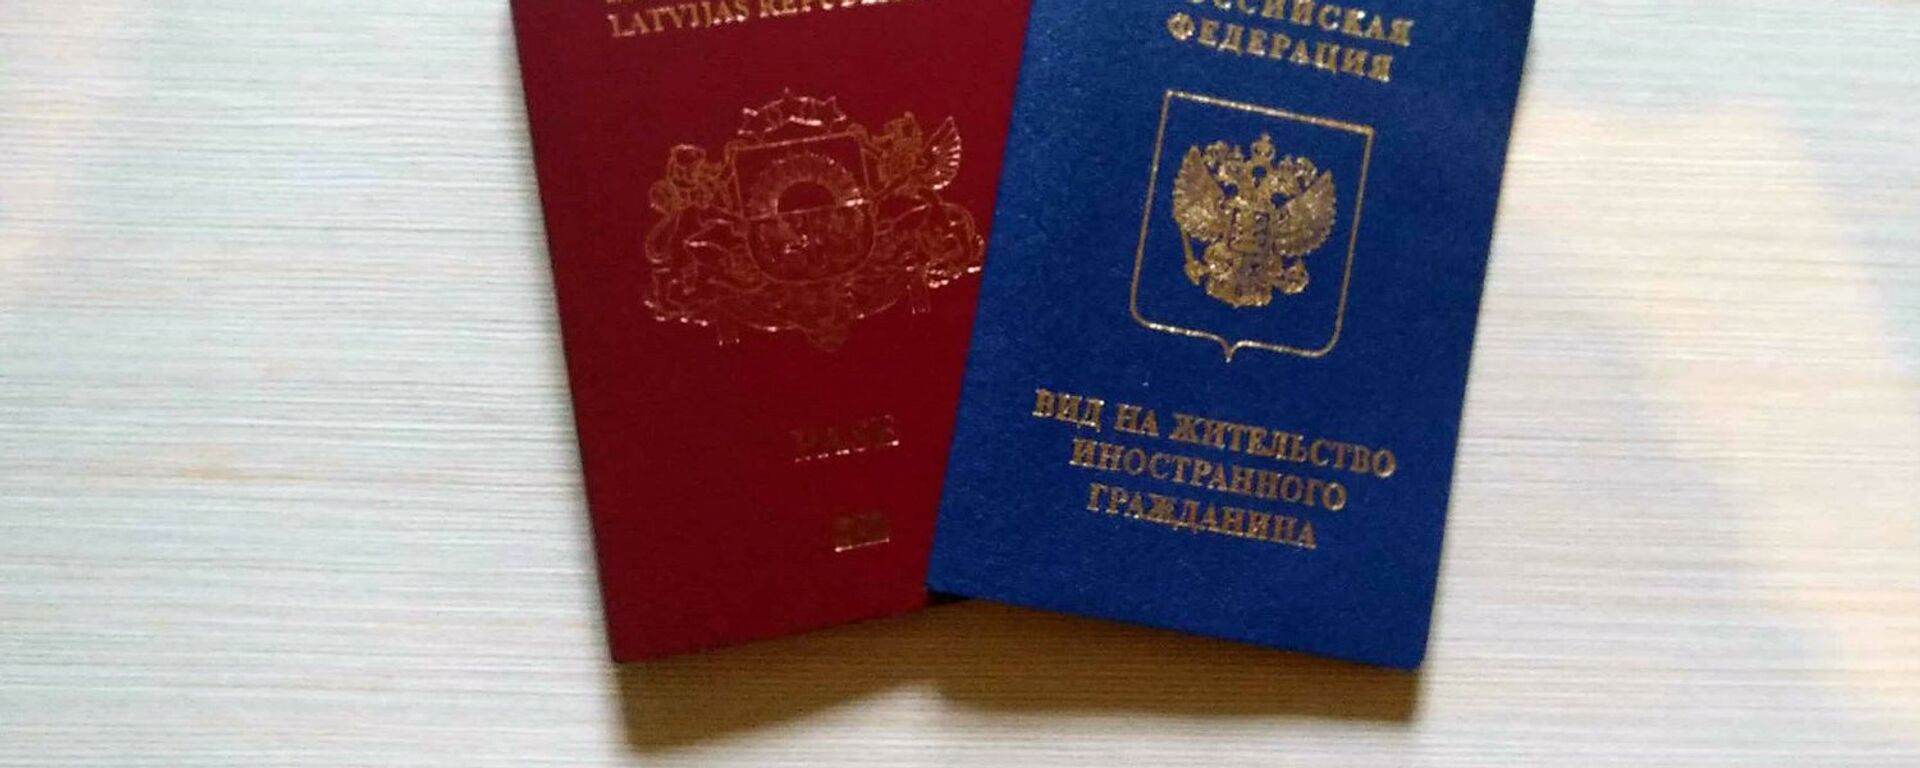 Паспорт гражданина Латвийской республики и вид на жительство иностранного гражданина РФ - Sputnik Латвия, 1920, 22.03.2021